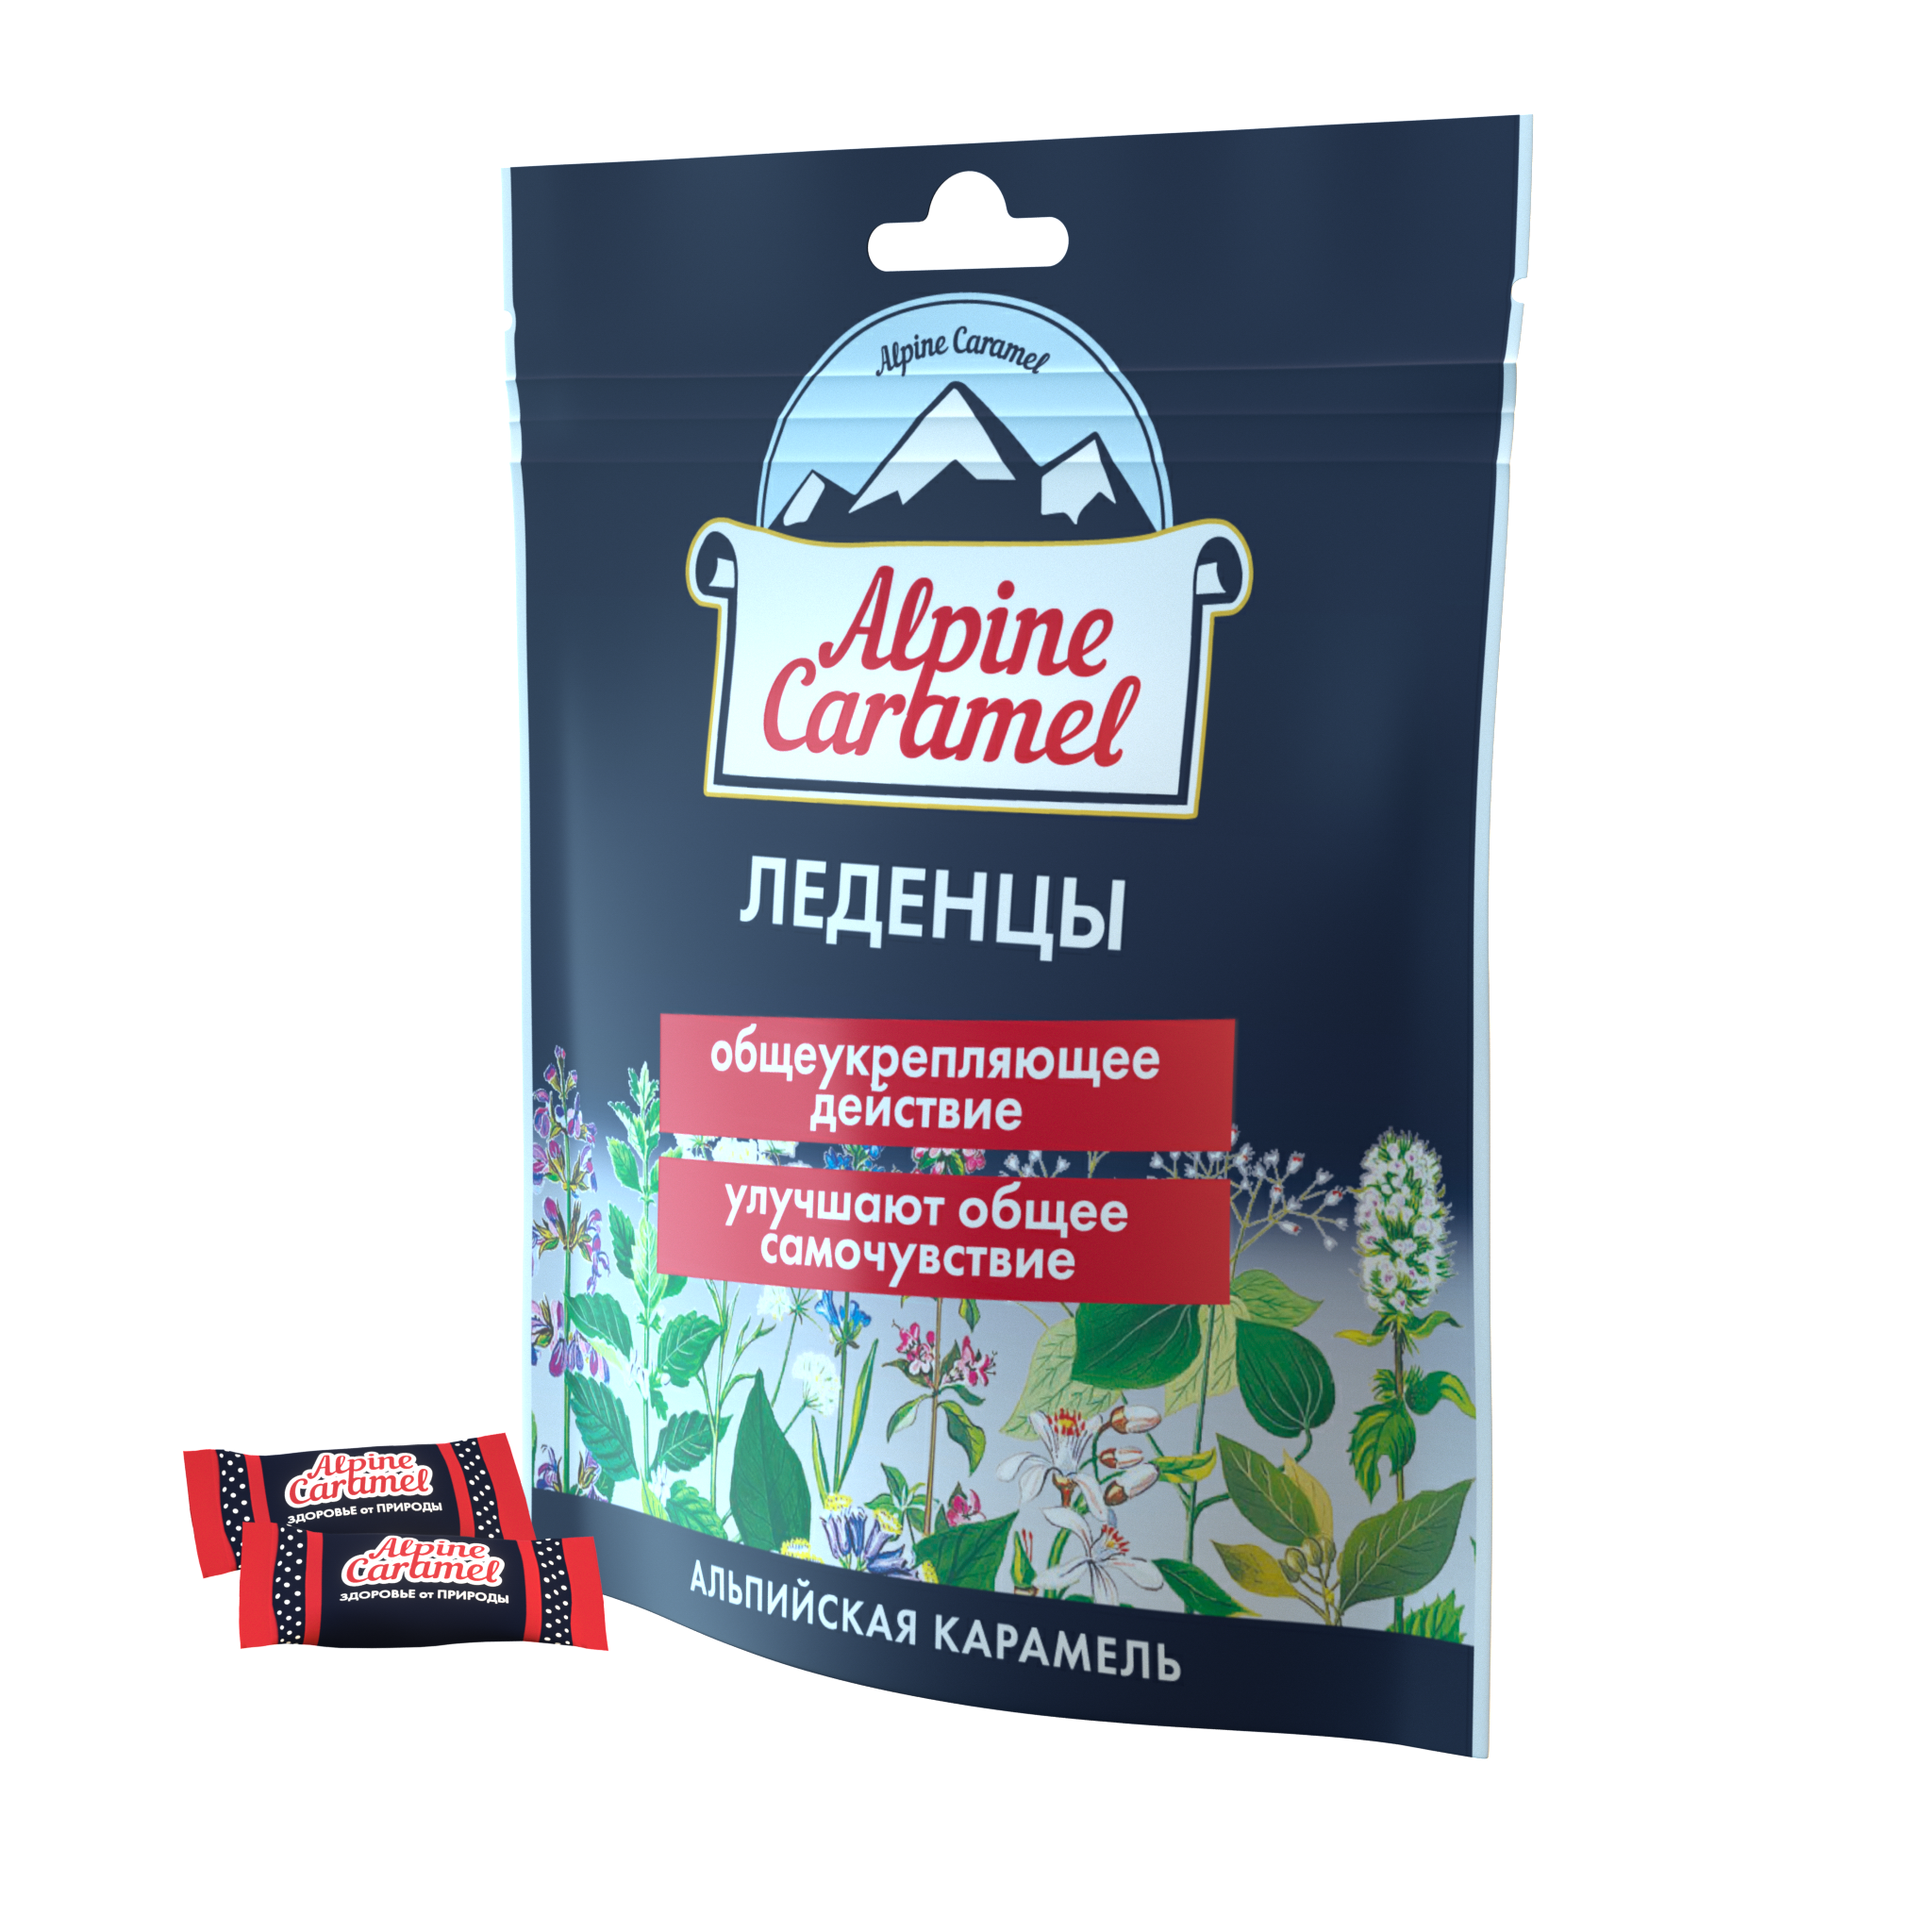 Alpine Caramel Альпийская Карамель леденцы, 75 г альпийская карамель леденцы 75 г 1 шт малина